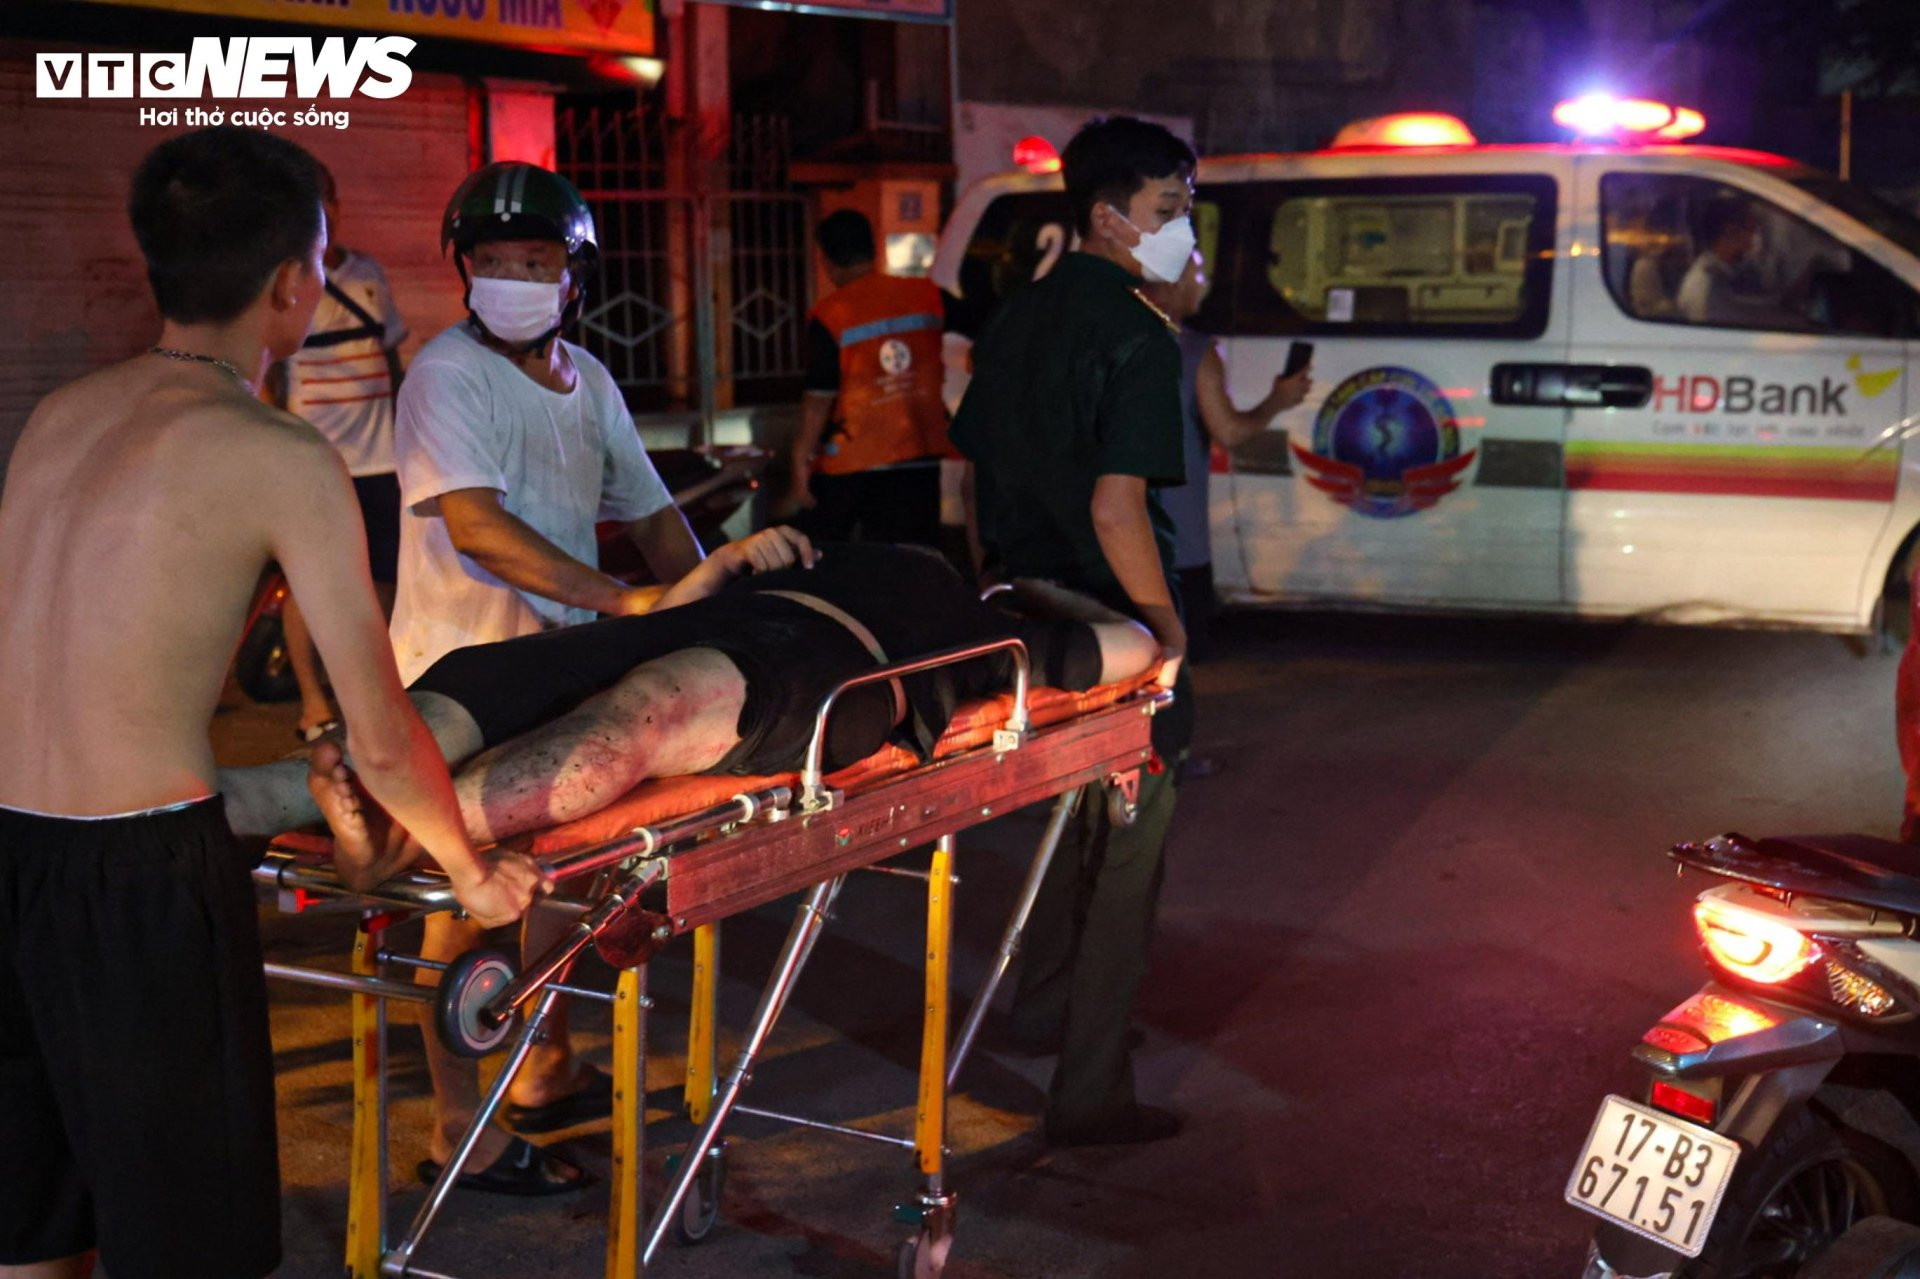 Hiện trường vụ cháy chung cư mini ở Hà Nội trong đêm, nhiều người ngất xỉu - 10